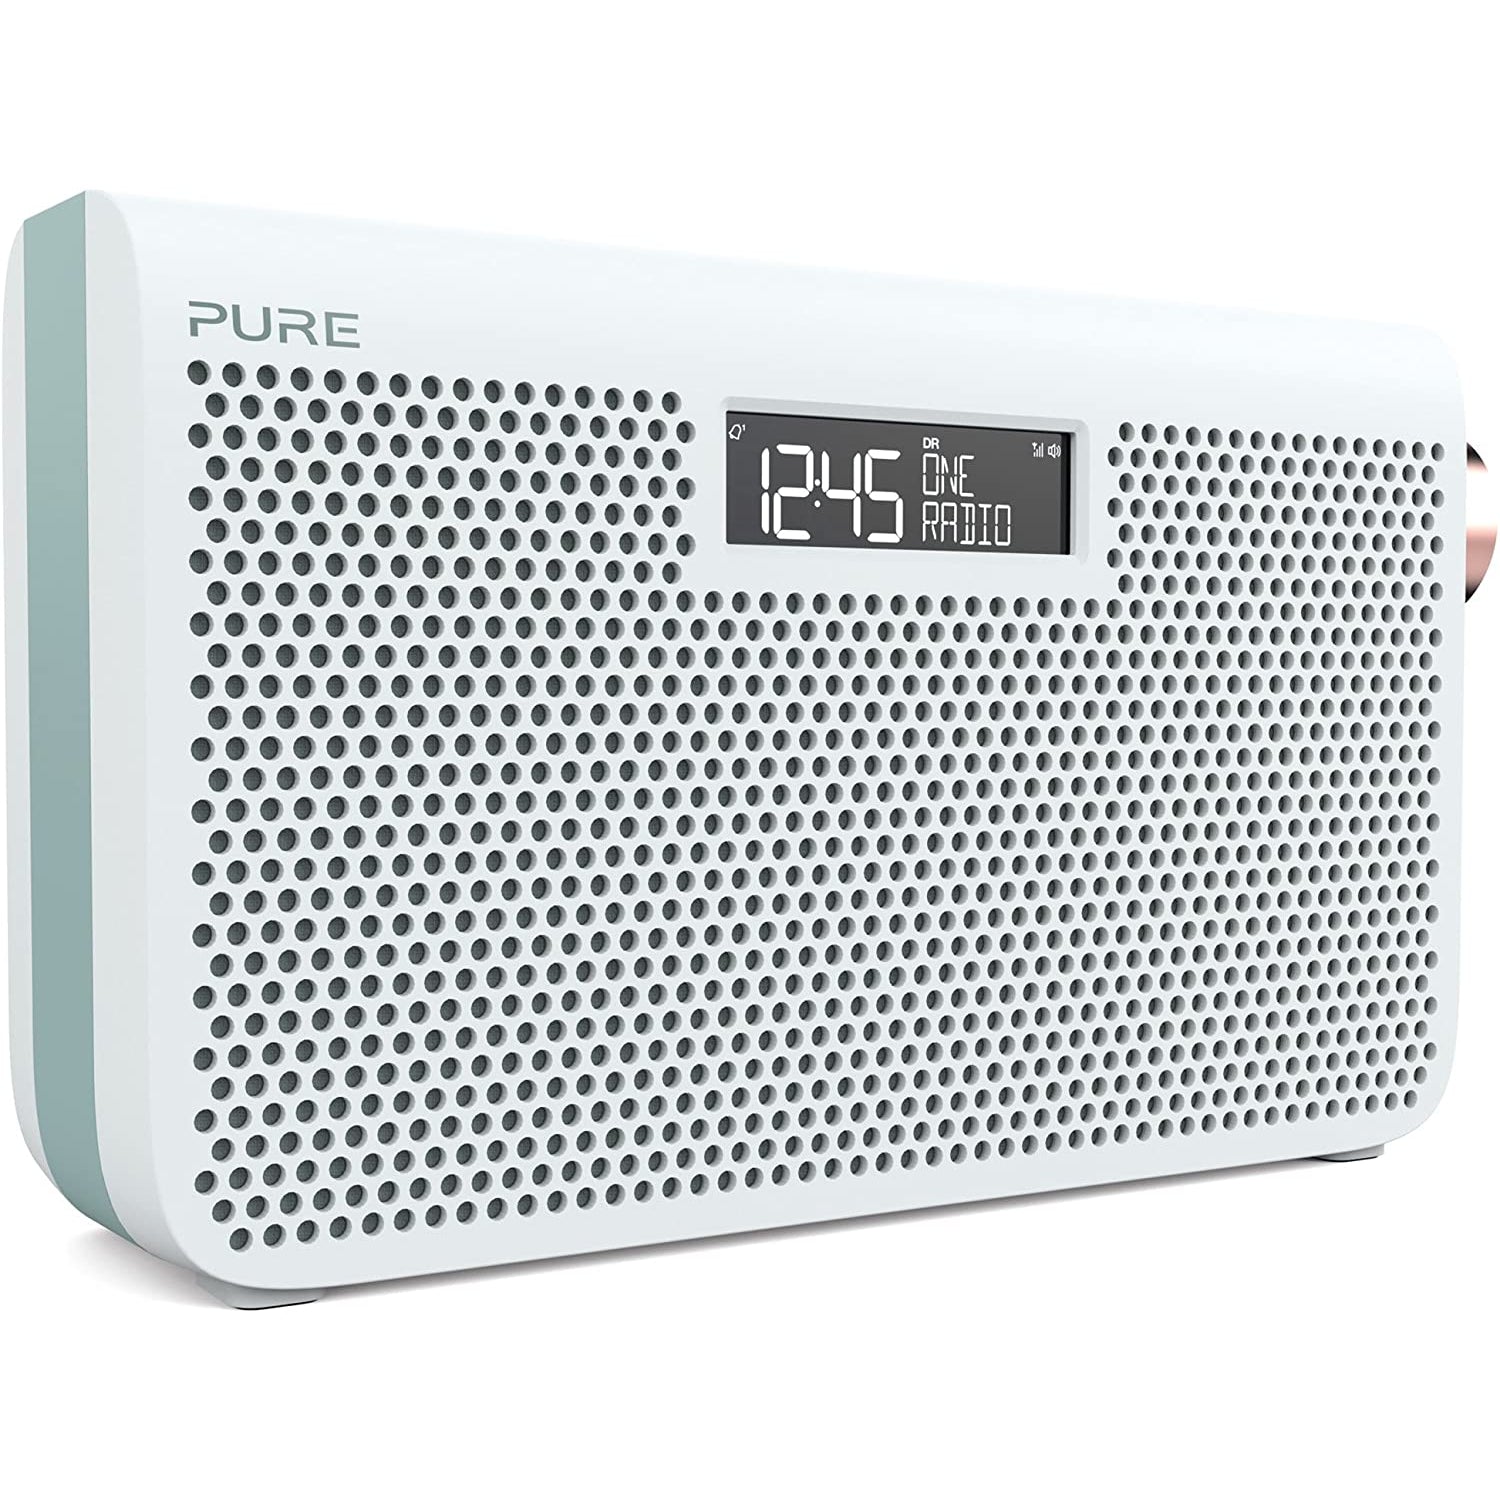 Pure One Maxi Series 3S FM/DAB+/DAB Digital Radio - White